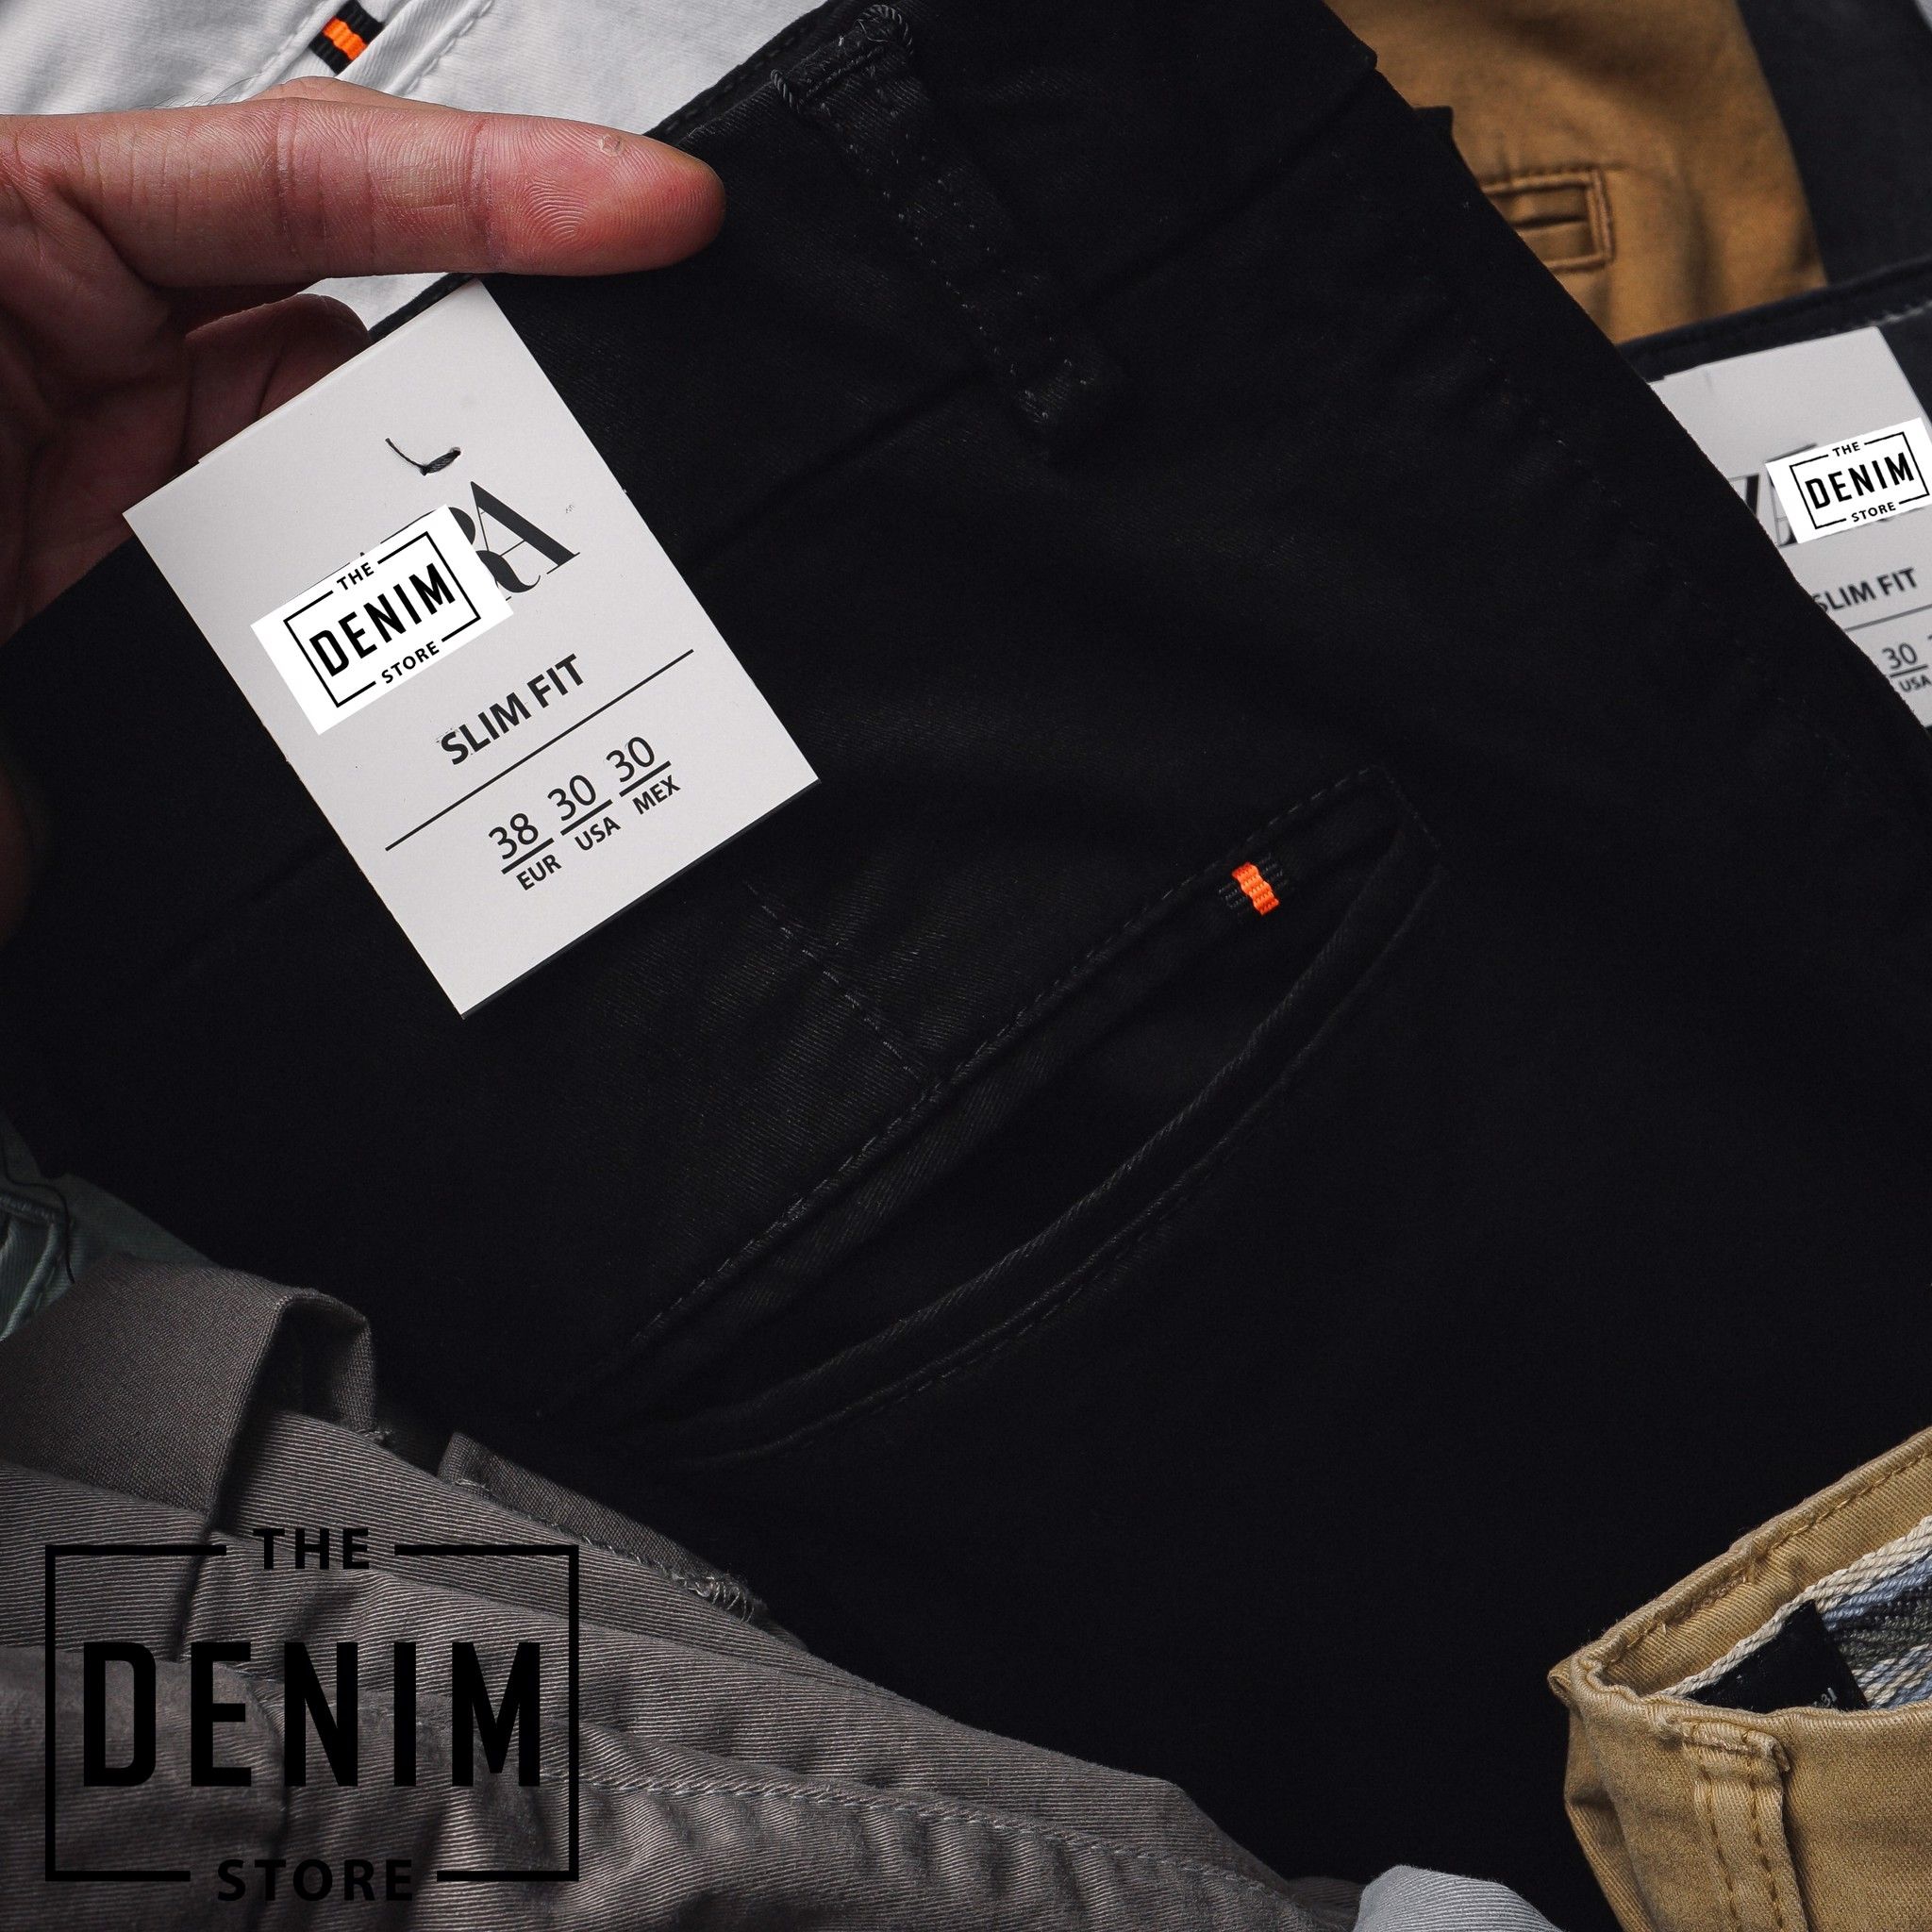 THE DENIM STORE - Chuyên quần áo nam hàng hiệu xuất khẩu - 37